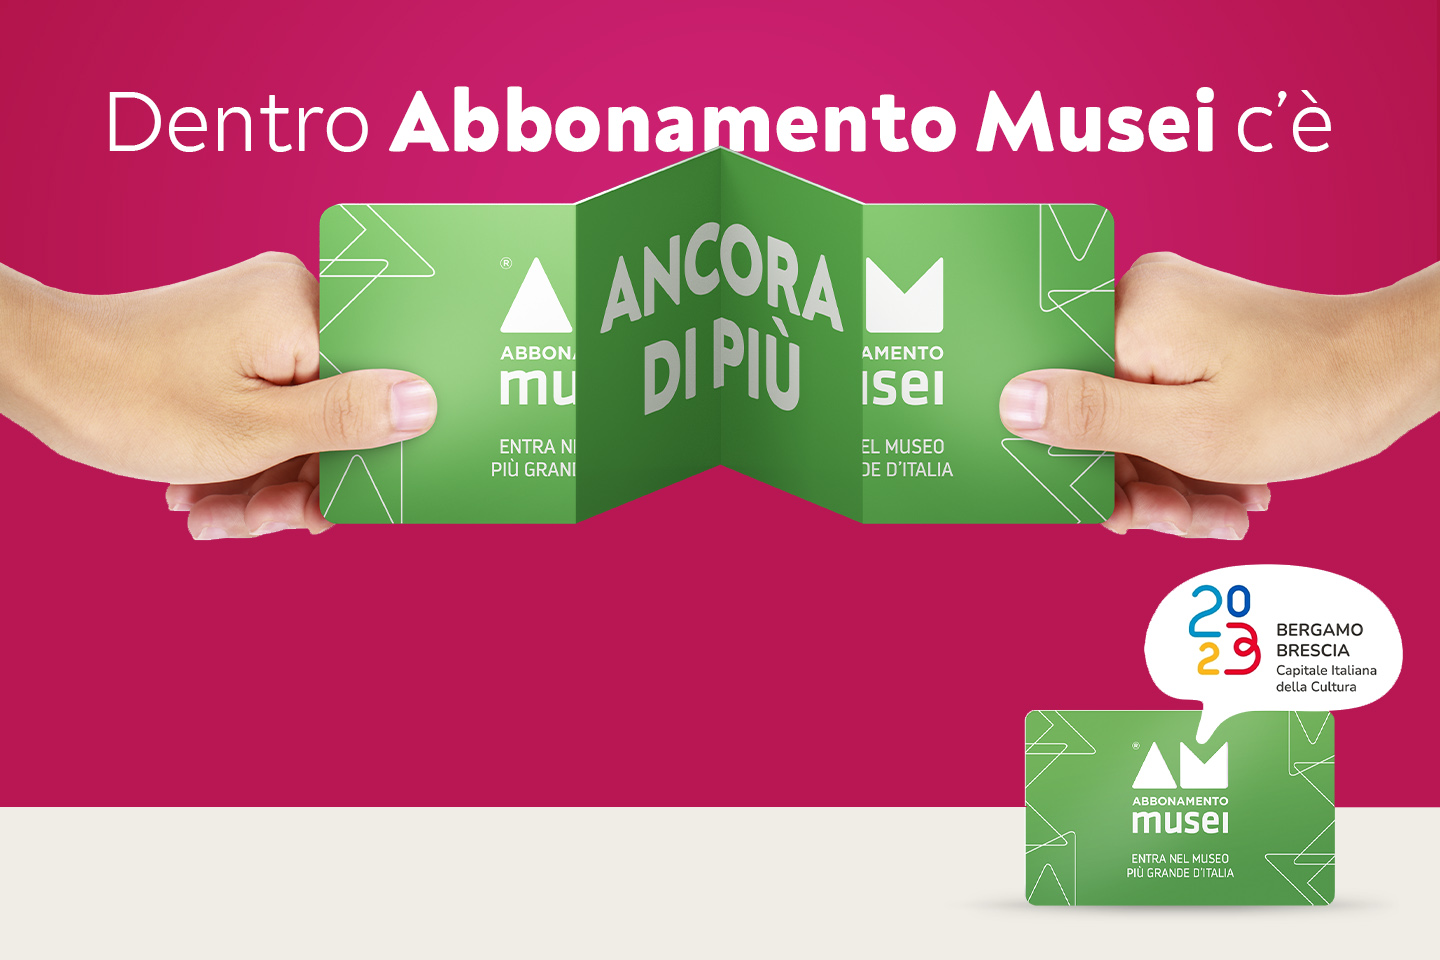 Abbonamento Musei - Bergamo Brescia Capitale Italiana della Cultura 2023